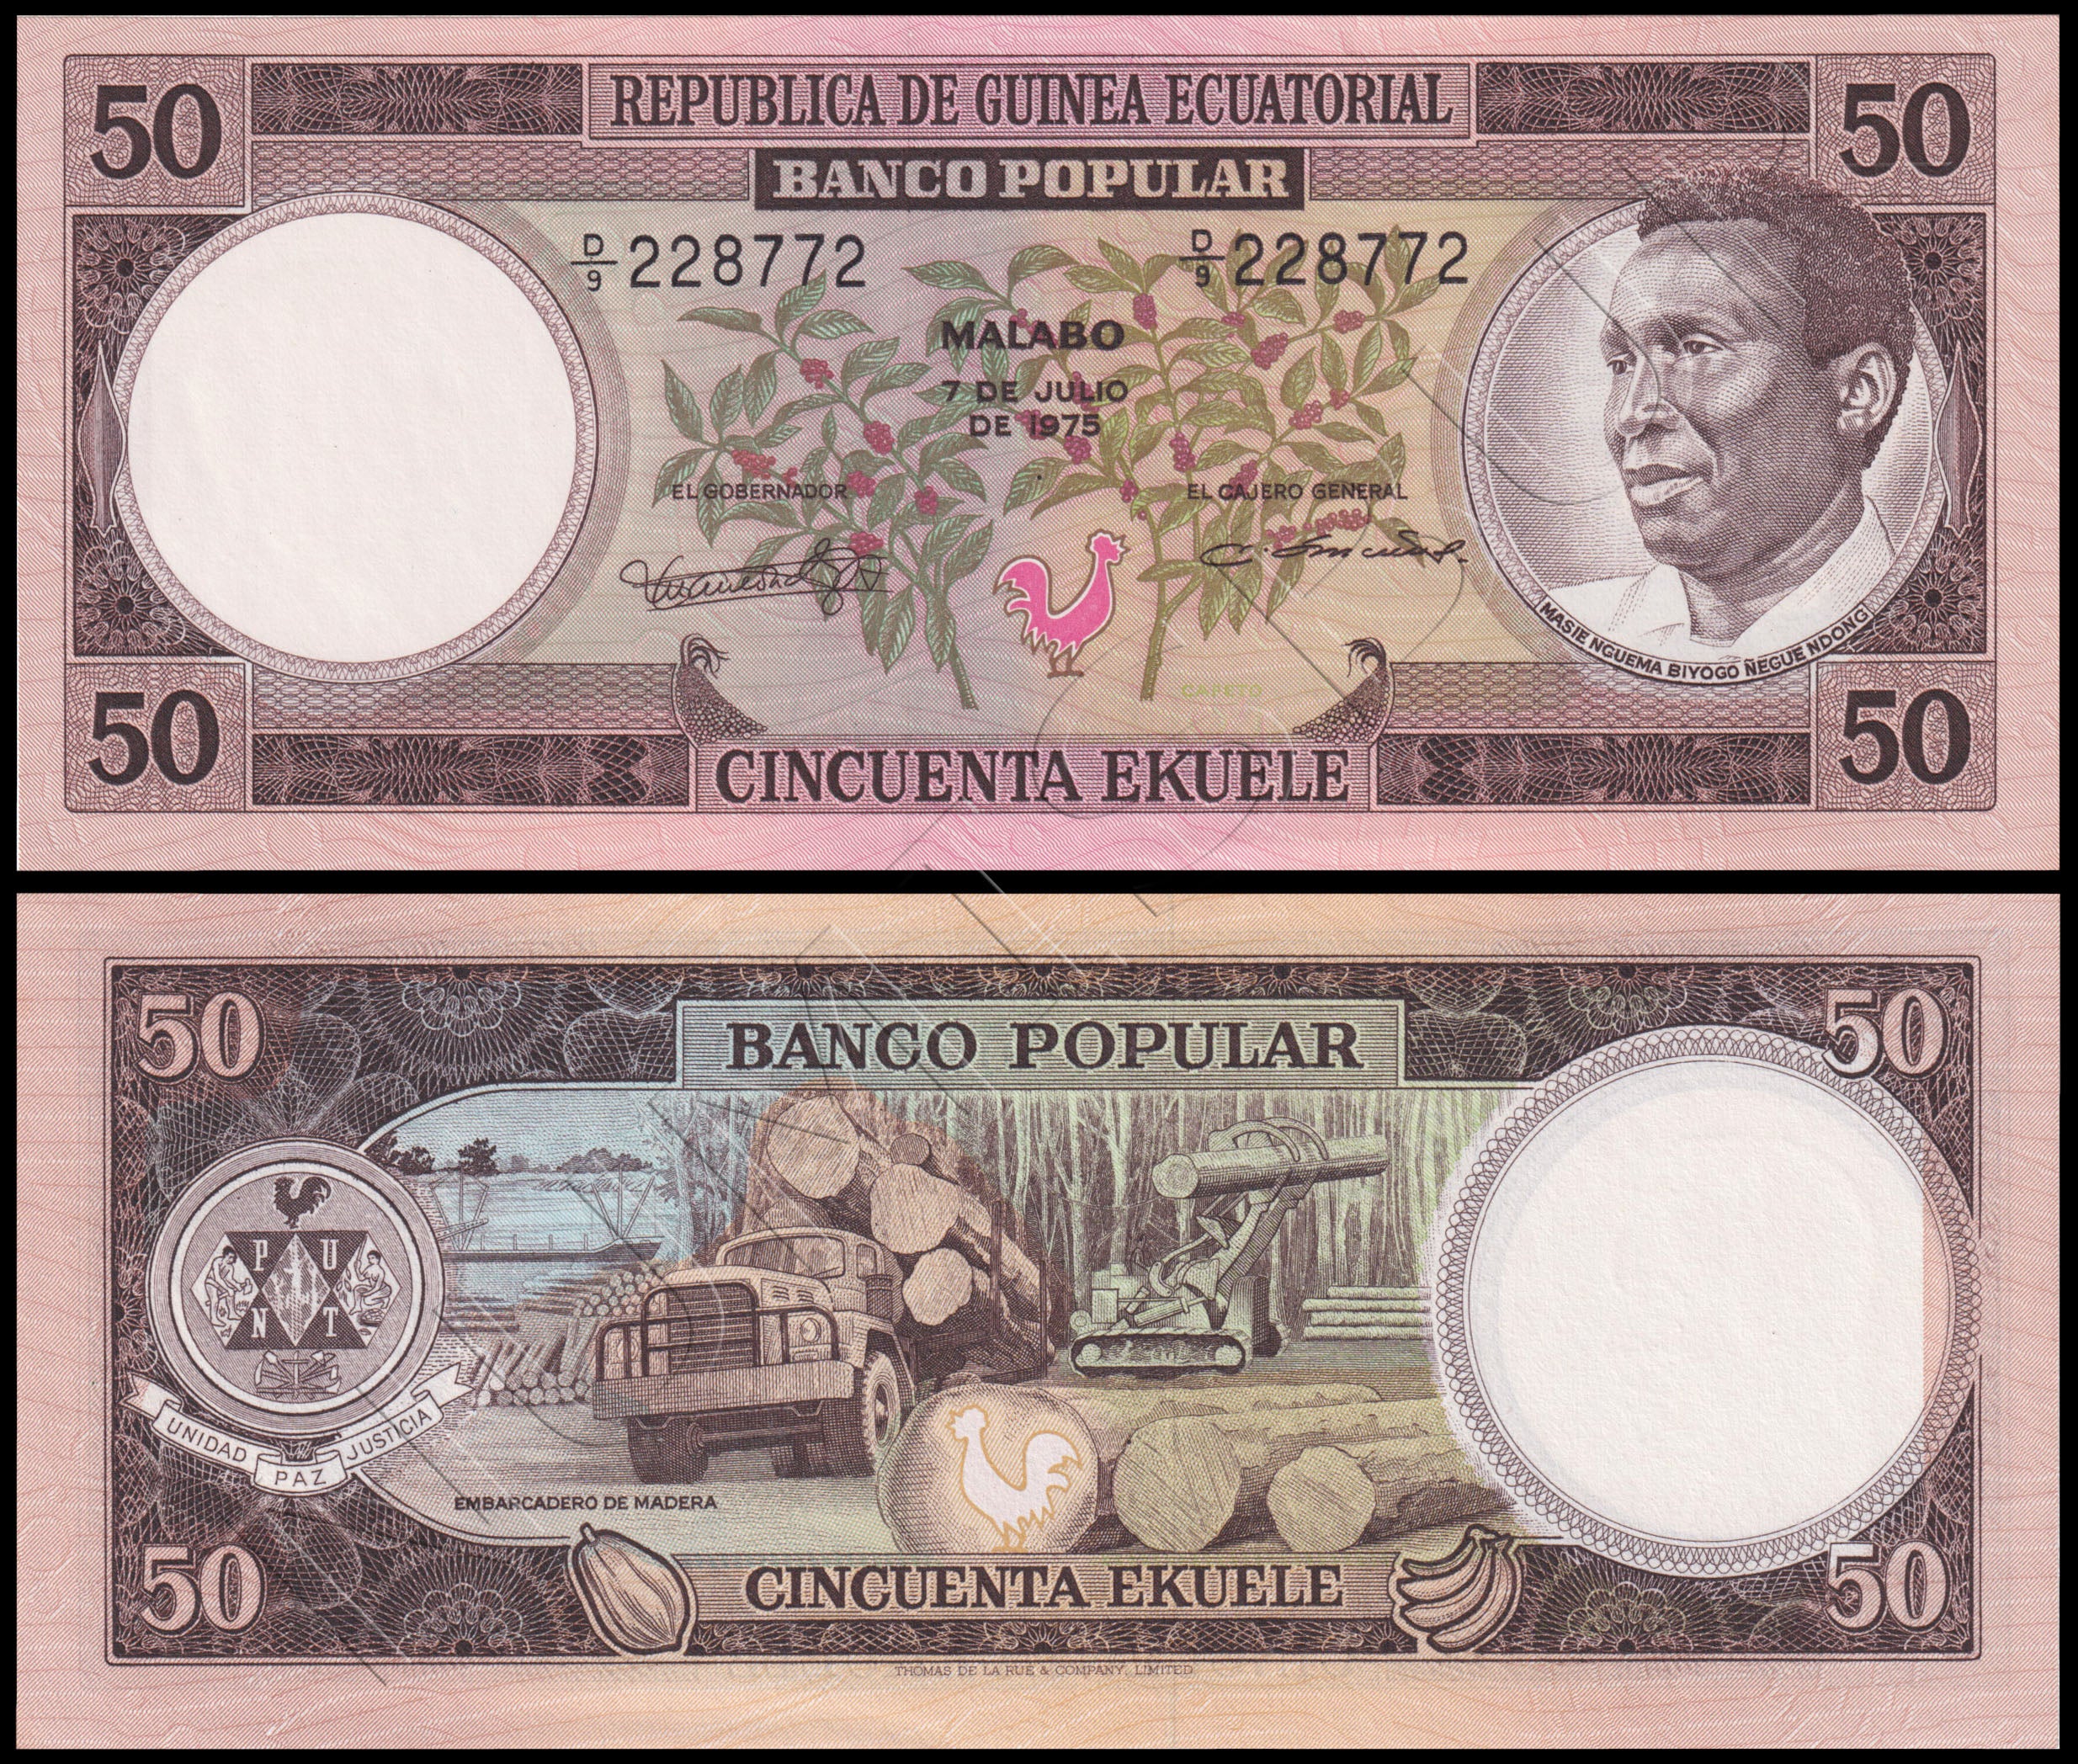 50 EKUELE GUINEA ECUATORIAL 1975 - PICK 10